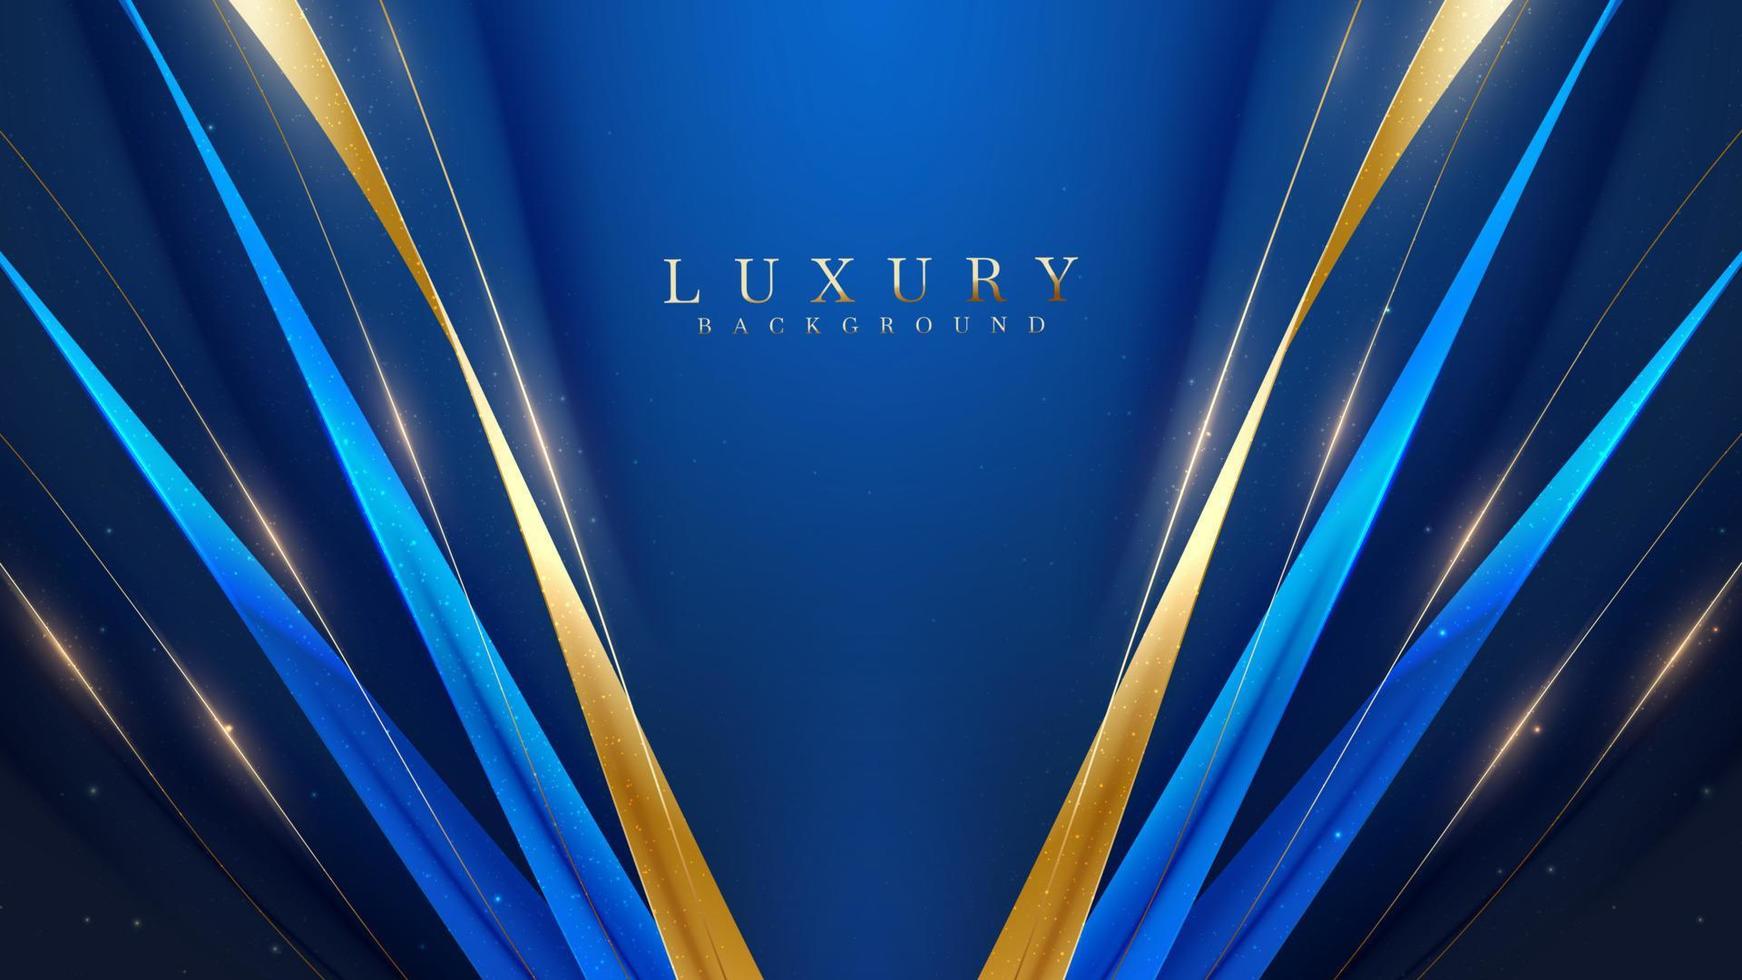 blauwe luxe achtergrond met gouden lintdecoratie en glitter lichteffectelementen. vector